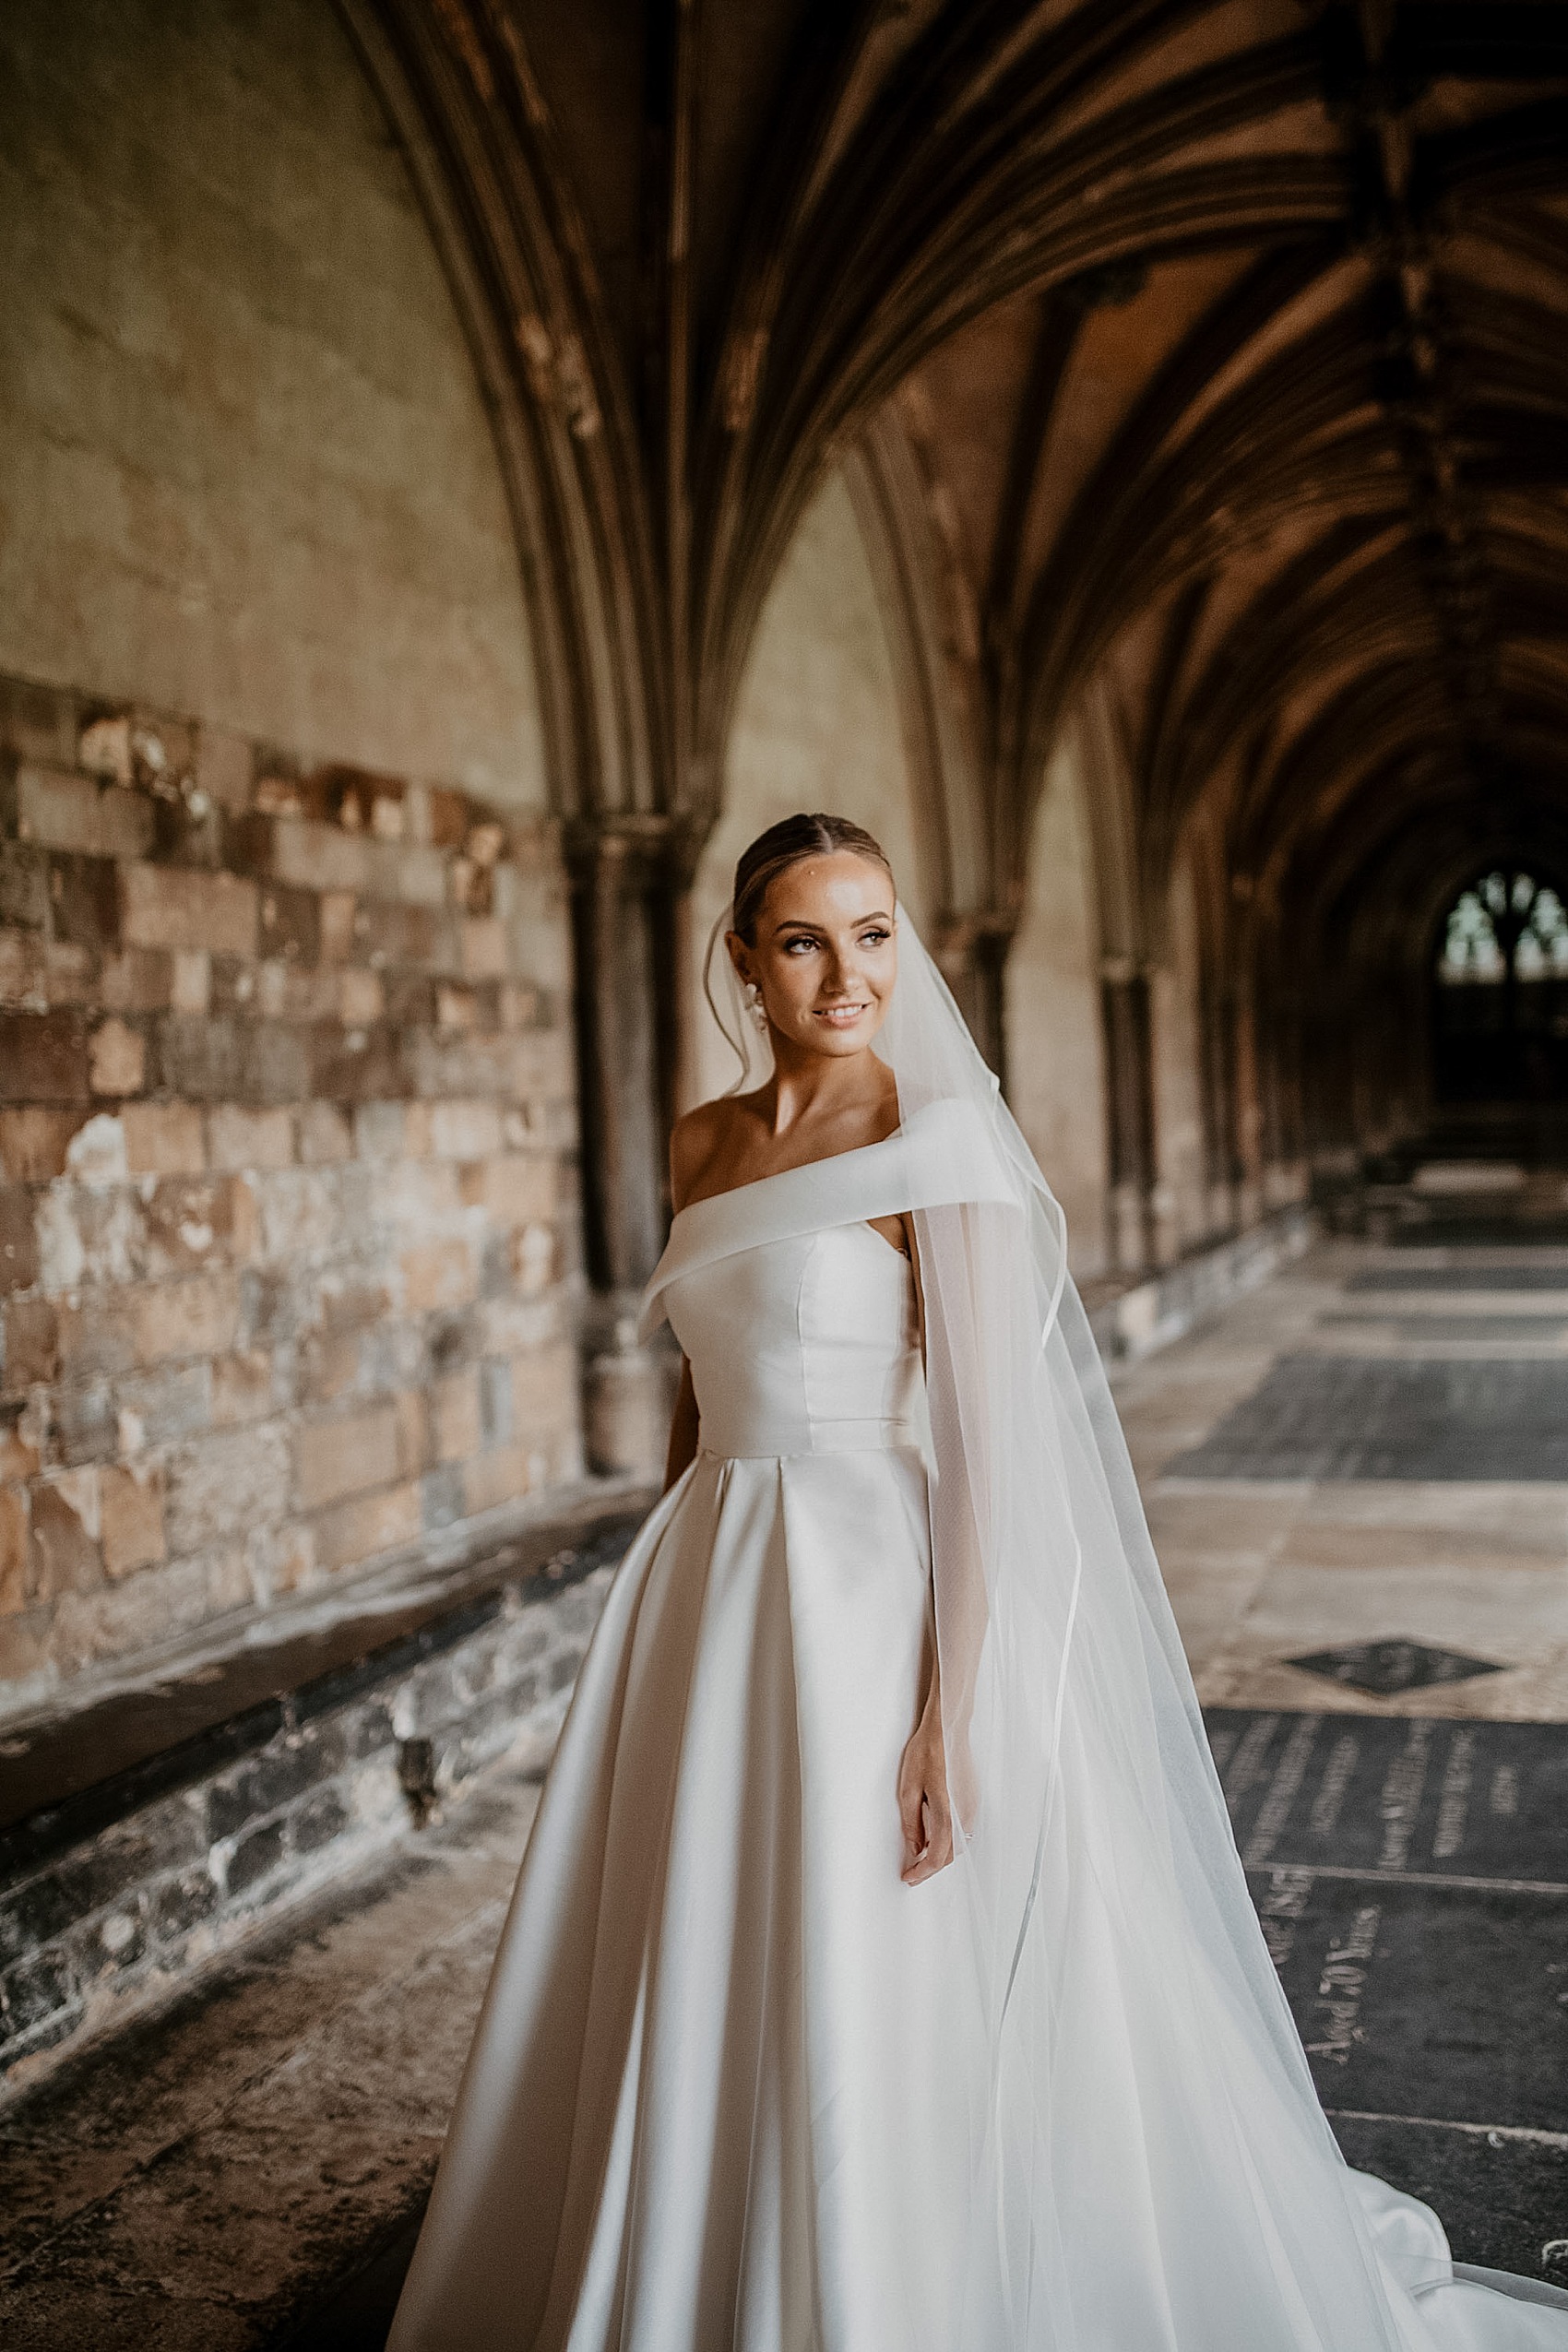 52 Jessica Bennett Bespoke bride Norwich Cathedral wedding